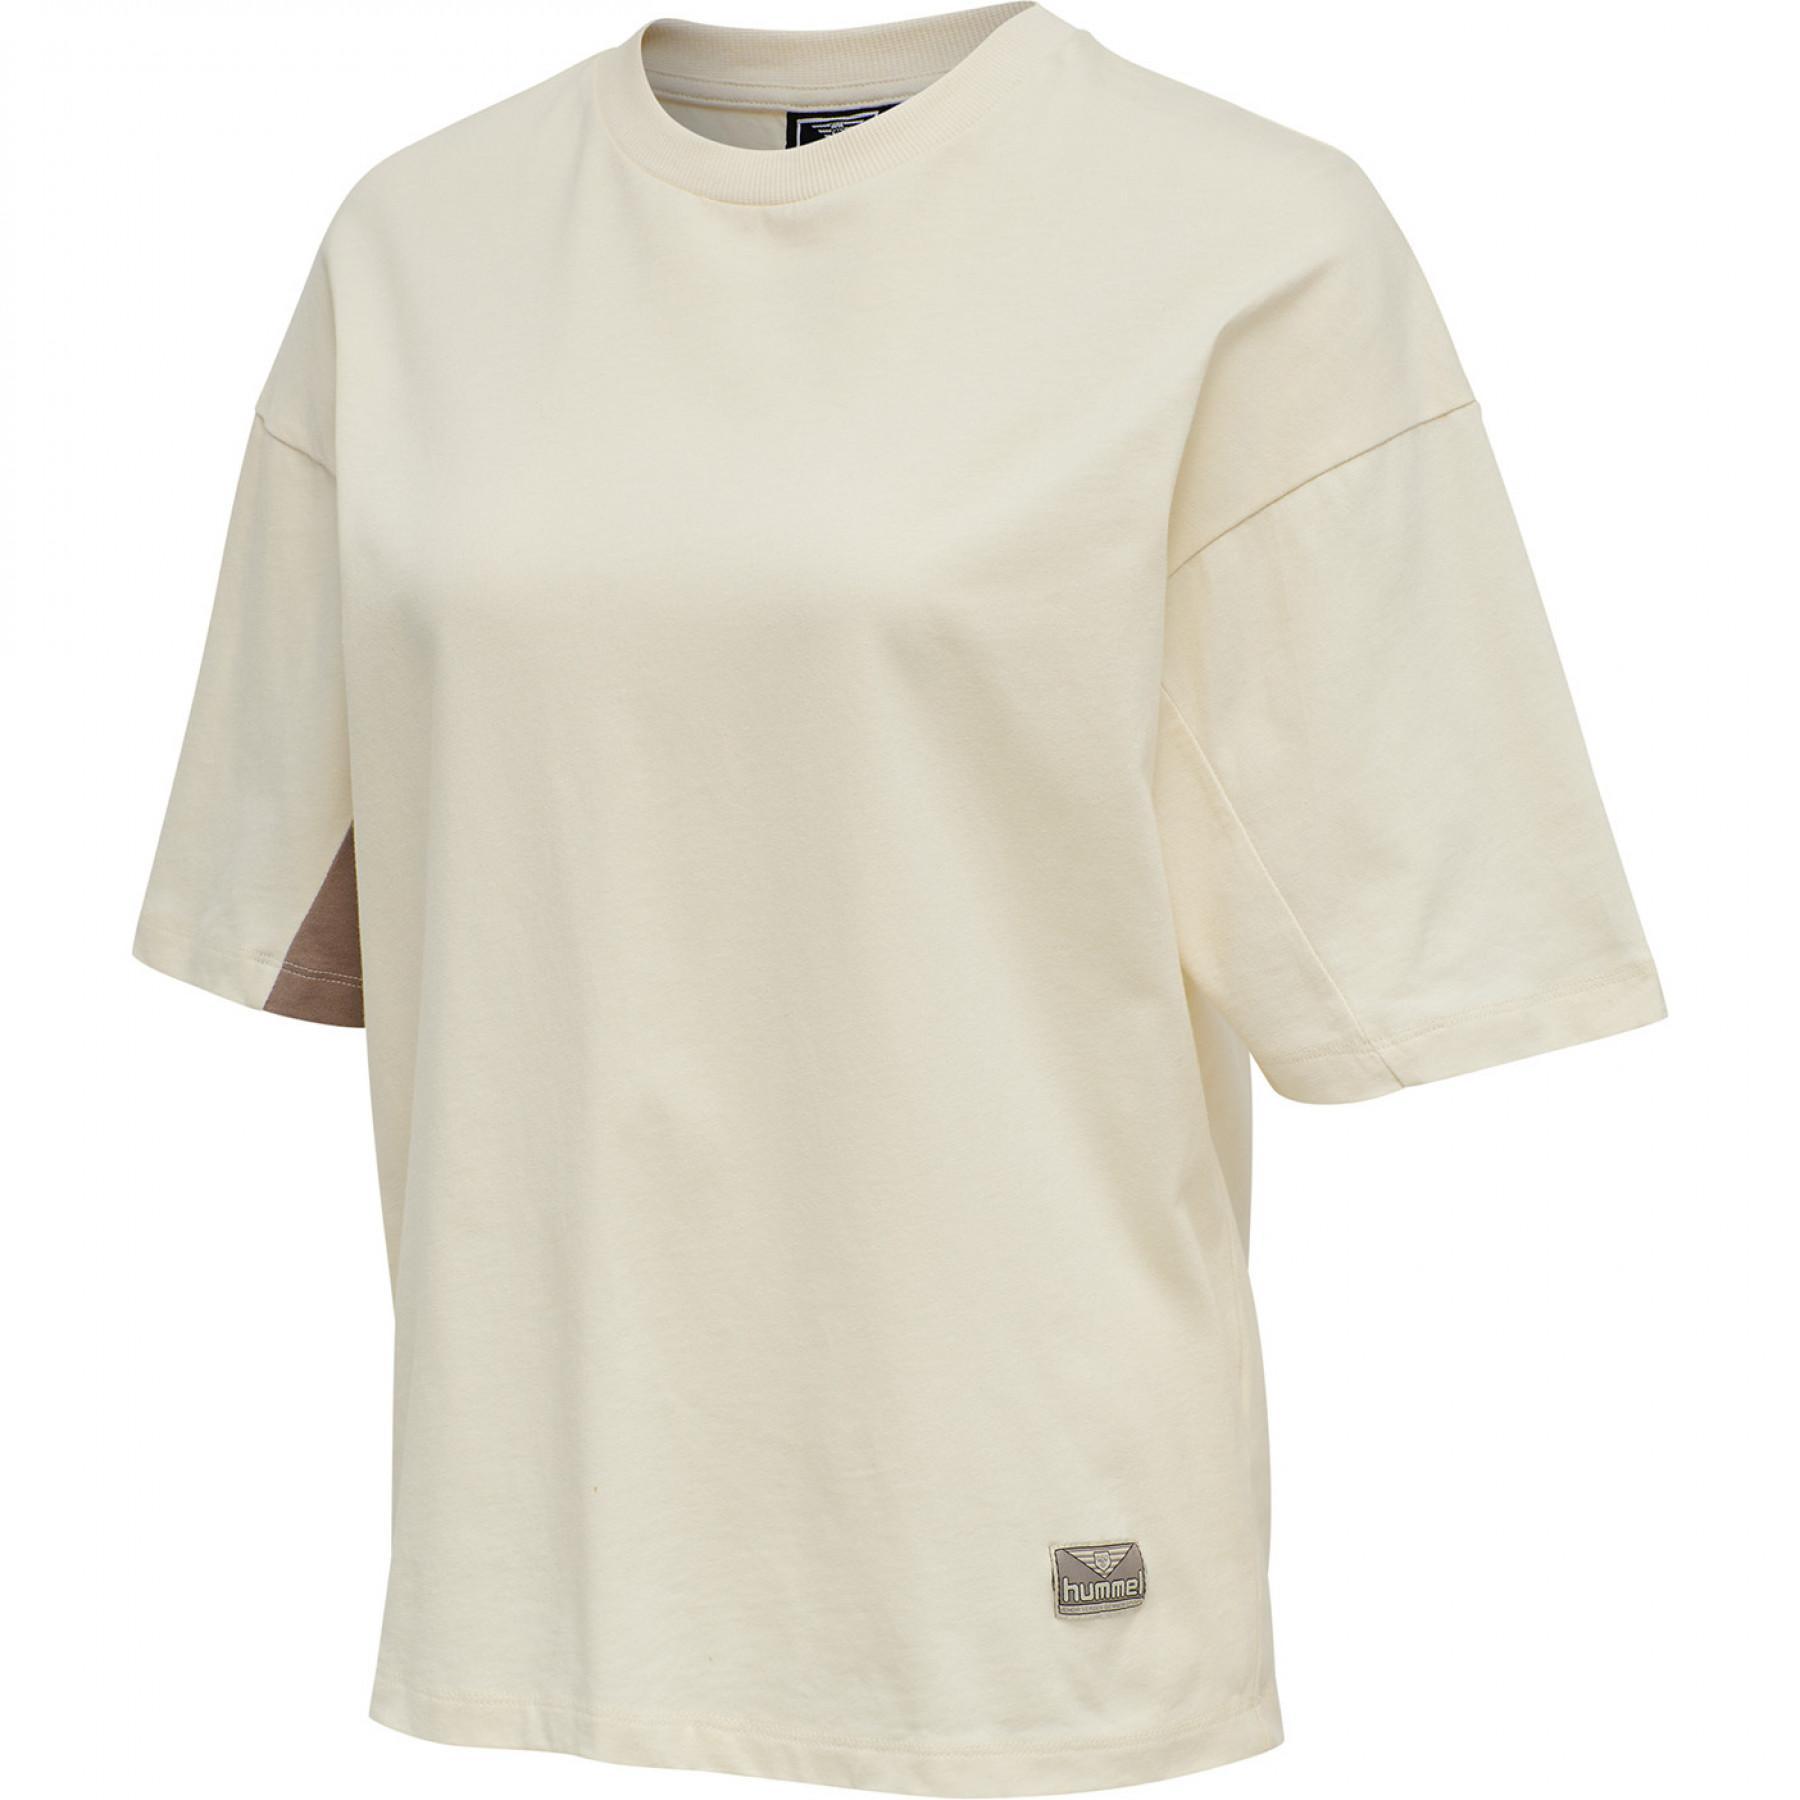 T-shirt short sleeves woman Hummel hmlROOFTOP